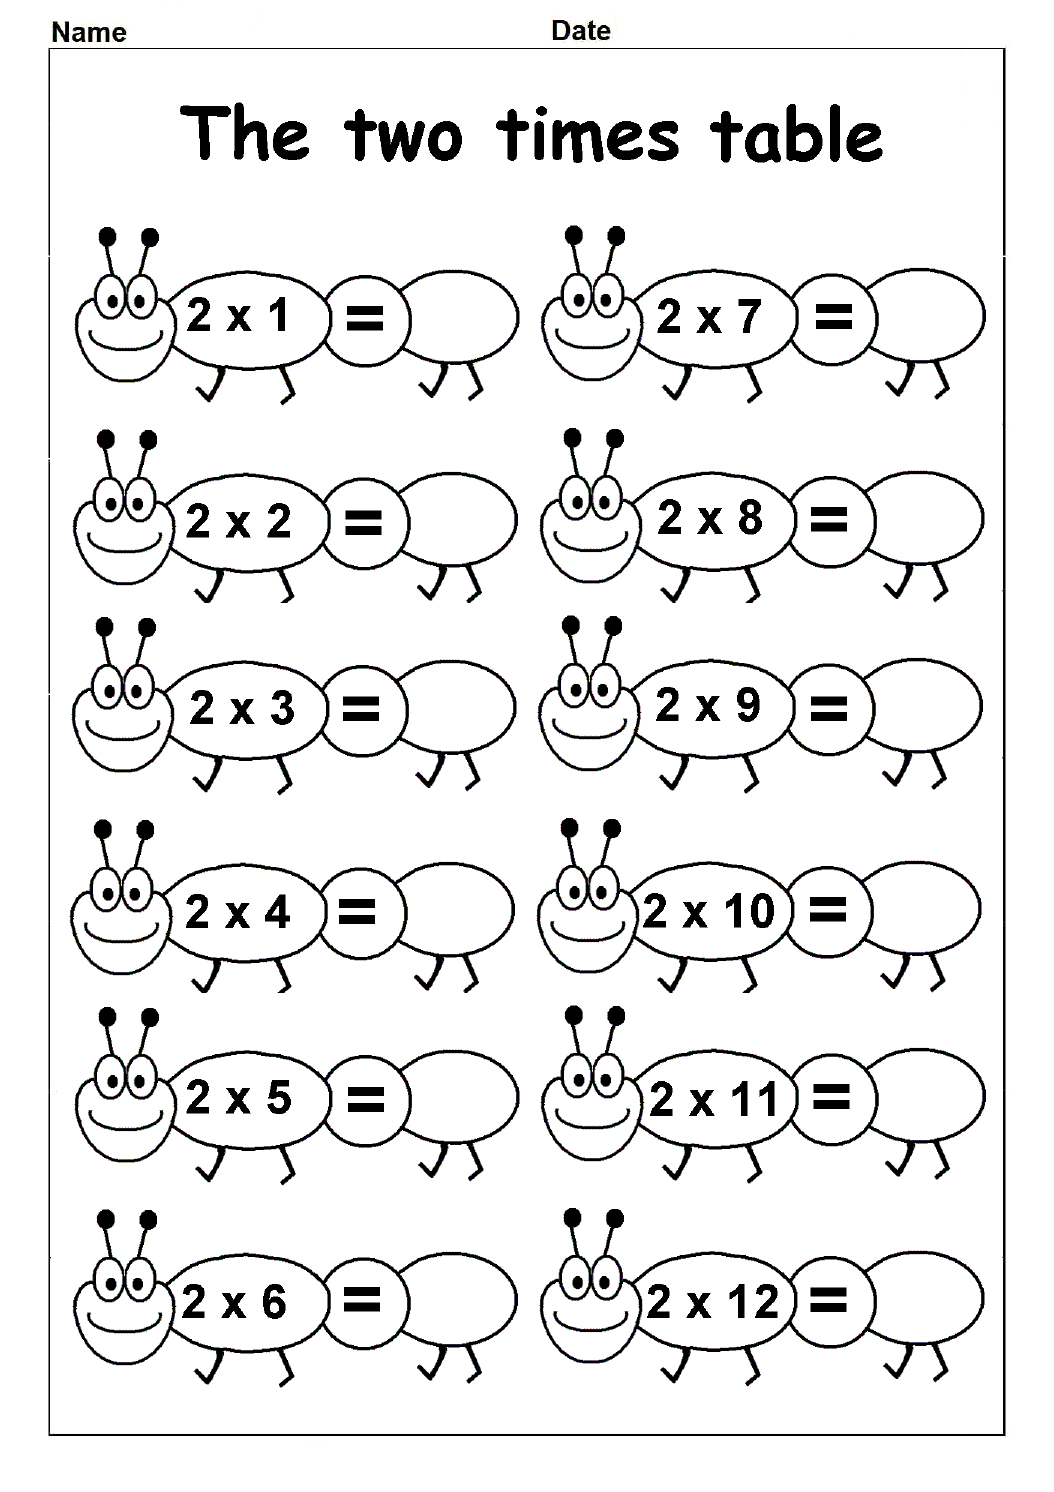 Multiplication Table Of 2 | Multiplication Table Charts for Printable Multiplication Table Pdf